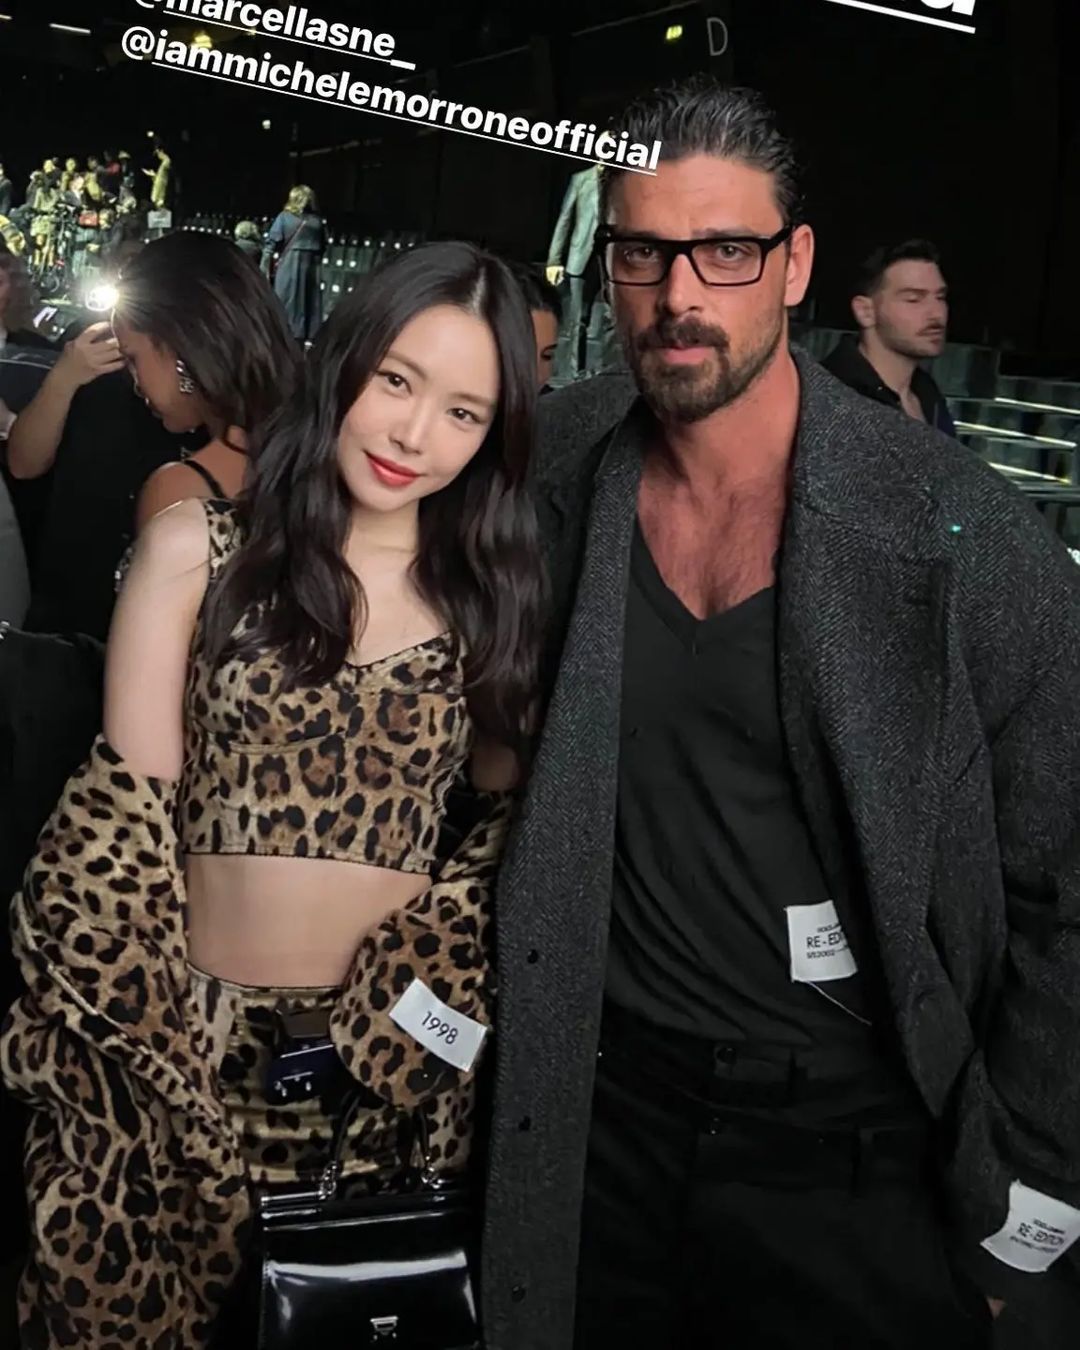 'Hót hòn họt' show Dolce & Gabbana tối nay: Quỳnh Anh Shyn nhuộm tóc cực chất, Kim Kardashian 'bức tử' vòng 1 trong mẫu áo gợi cảm - Ảnh 5.